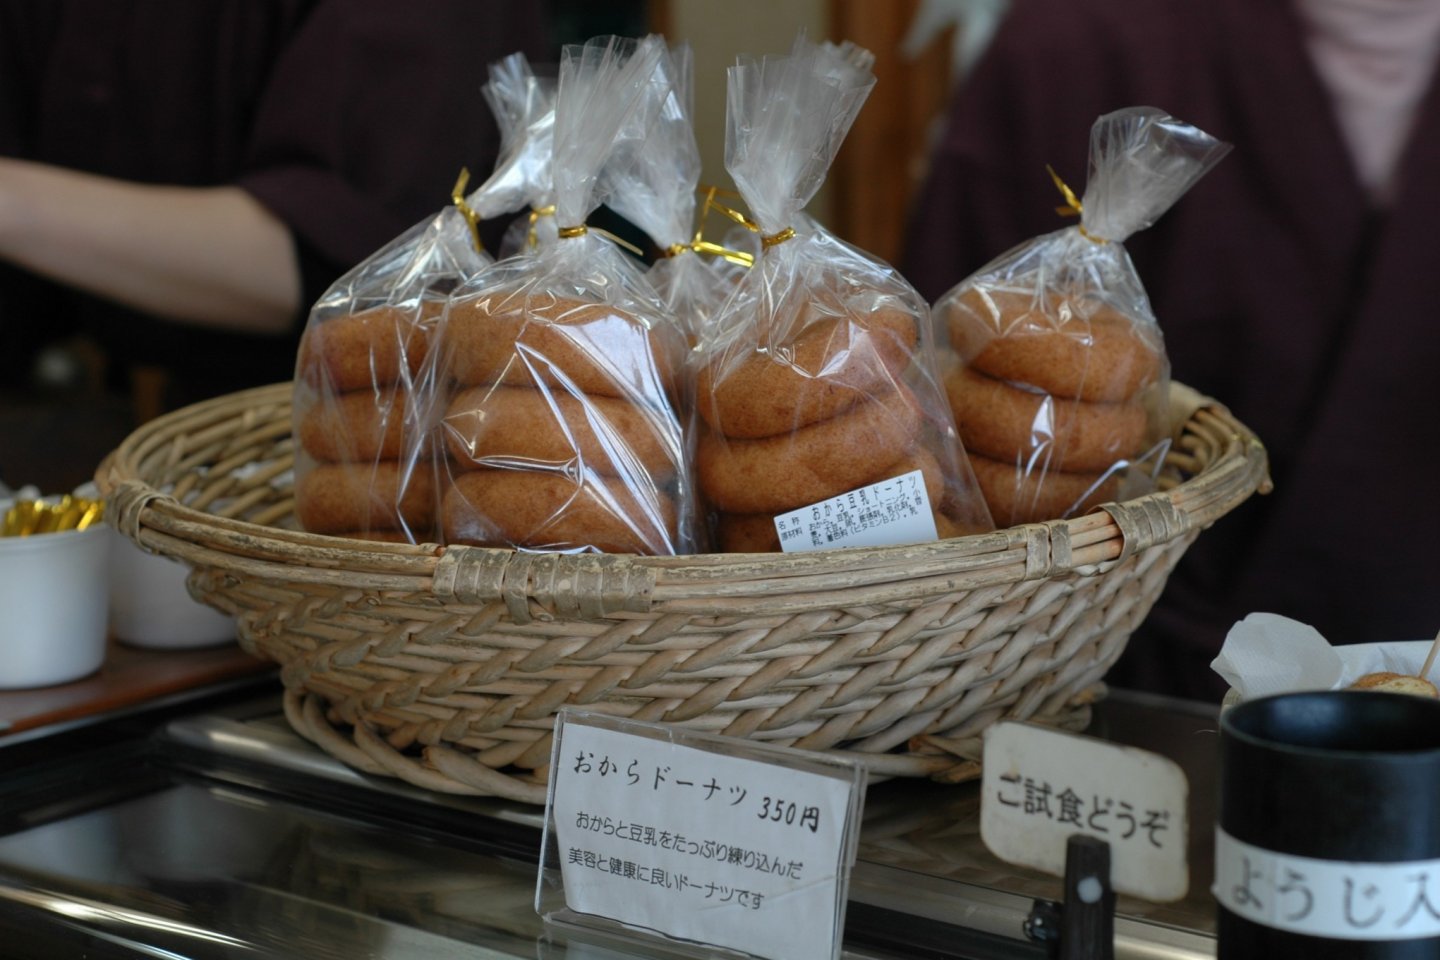 이 두부 도넛은 단연 세계에서 가장 건강에 좋은 도넛이다.